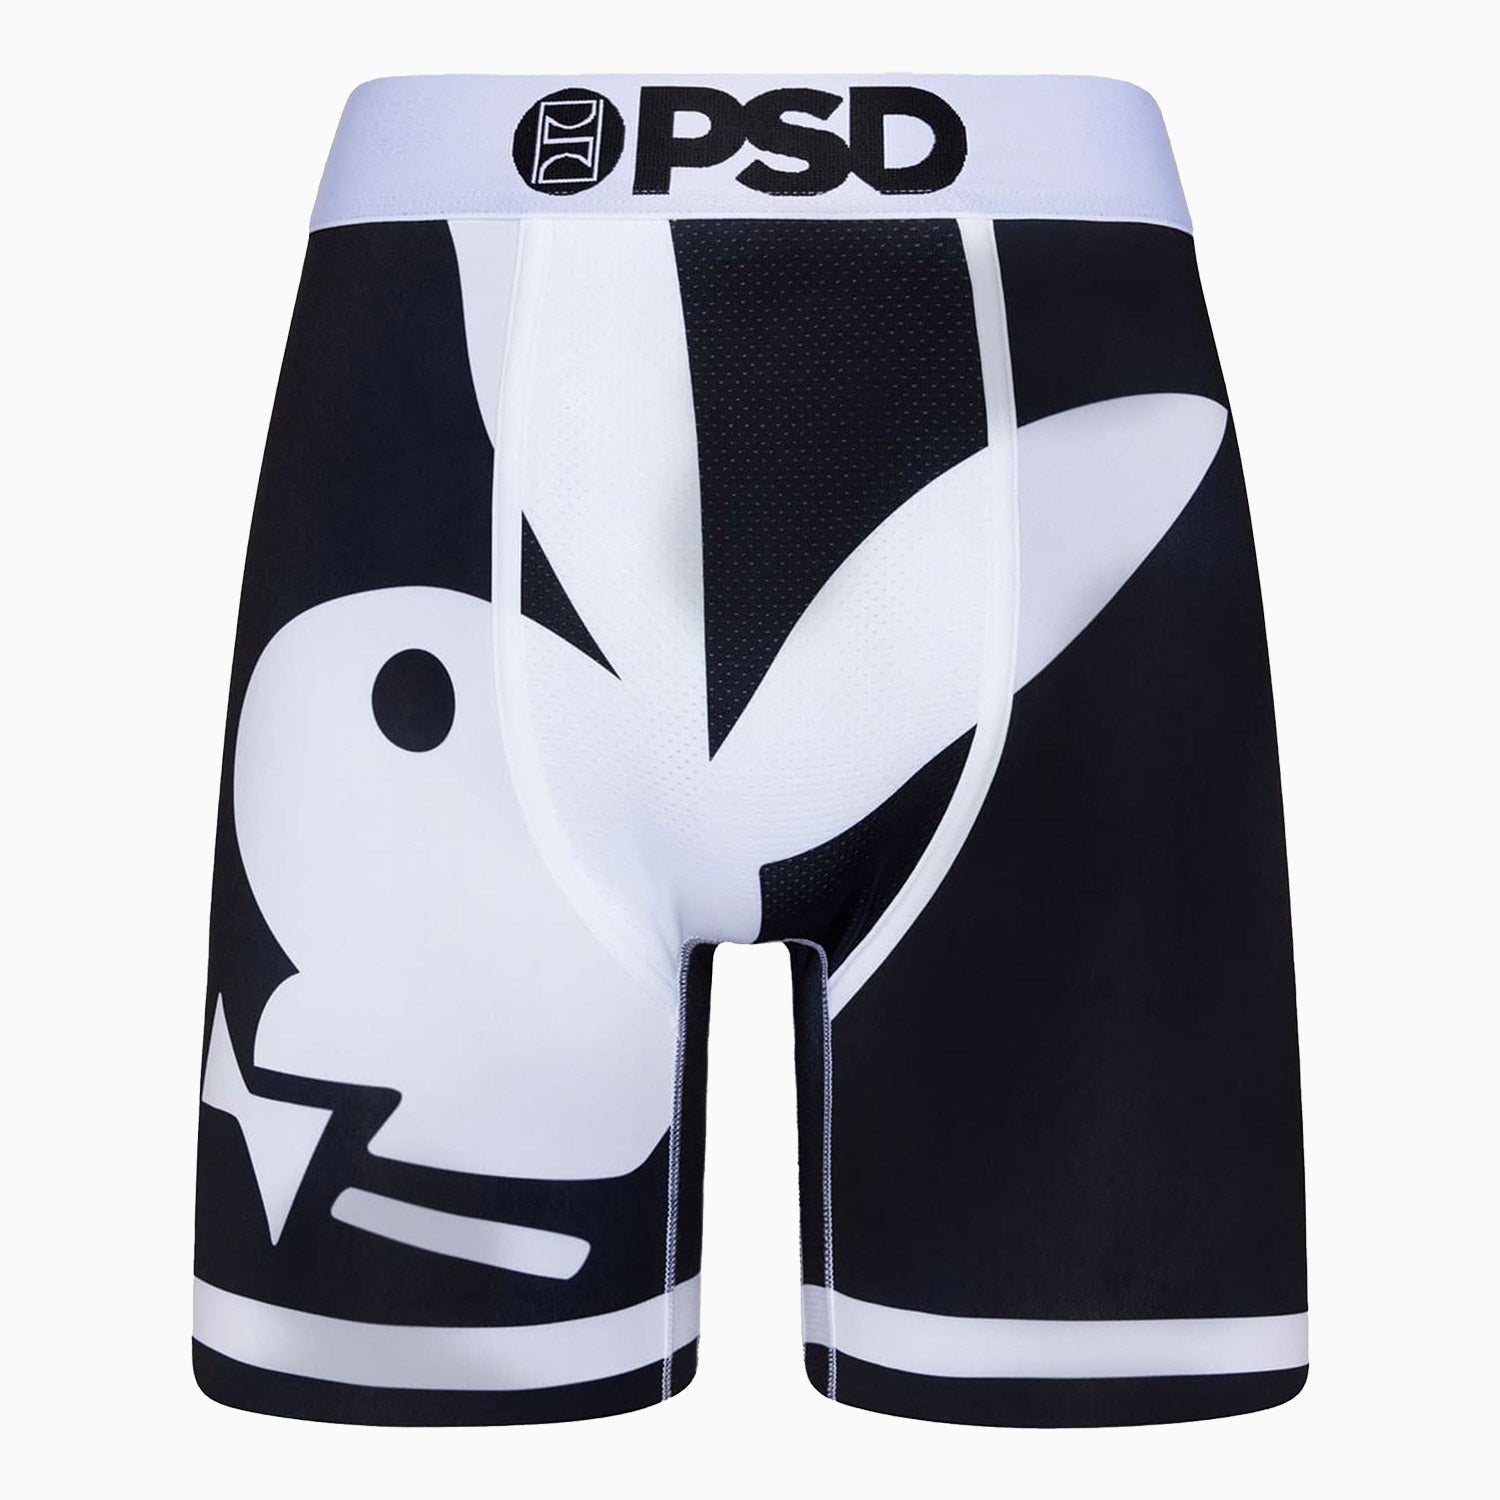 PSD Underwear Men's Playboy Big Bunny Boxer Briefs